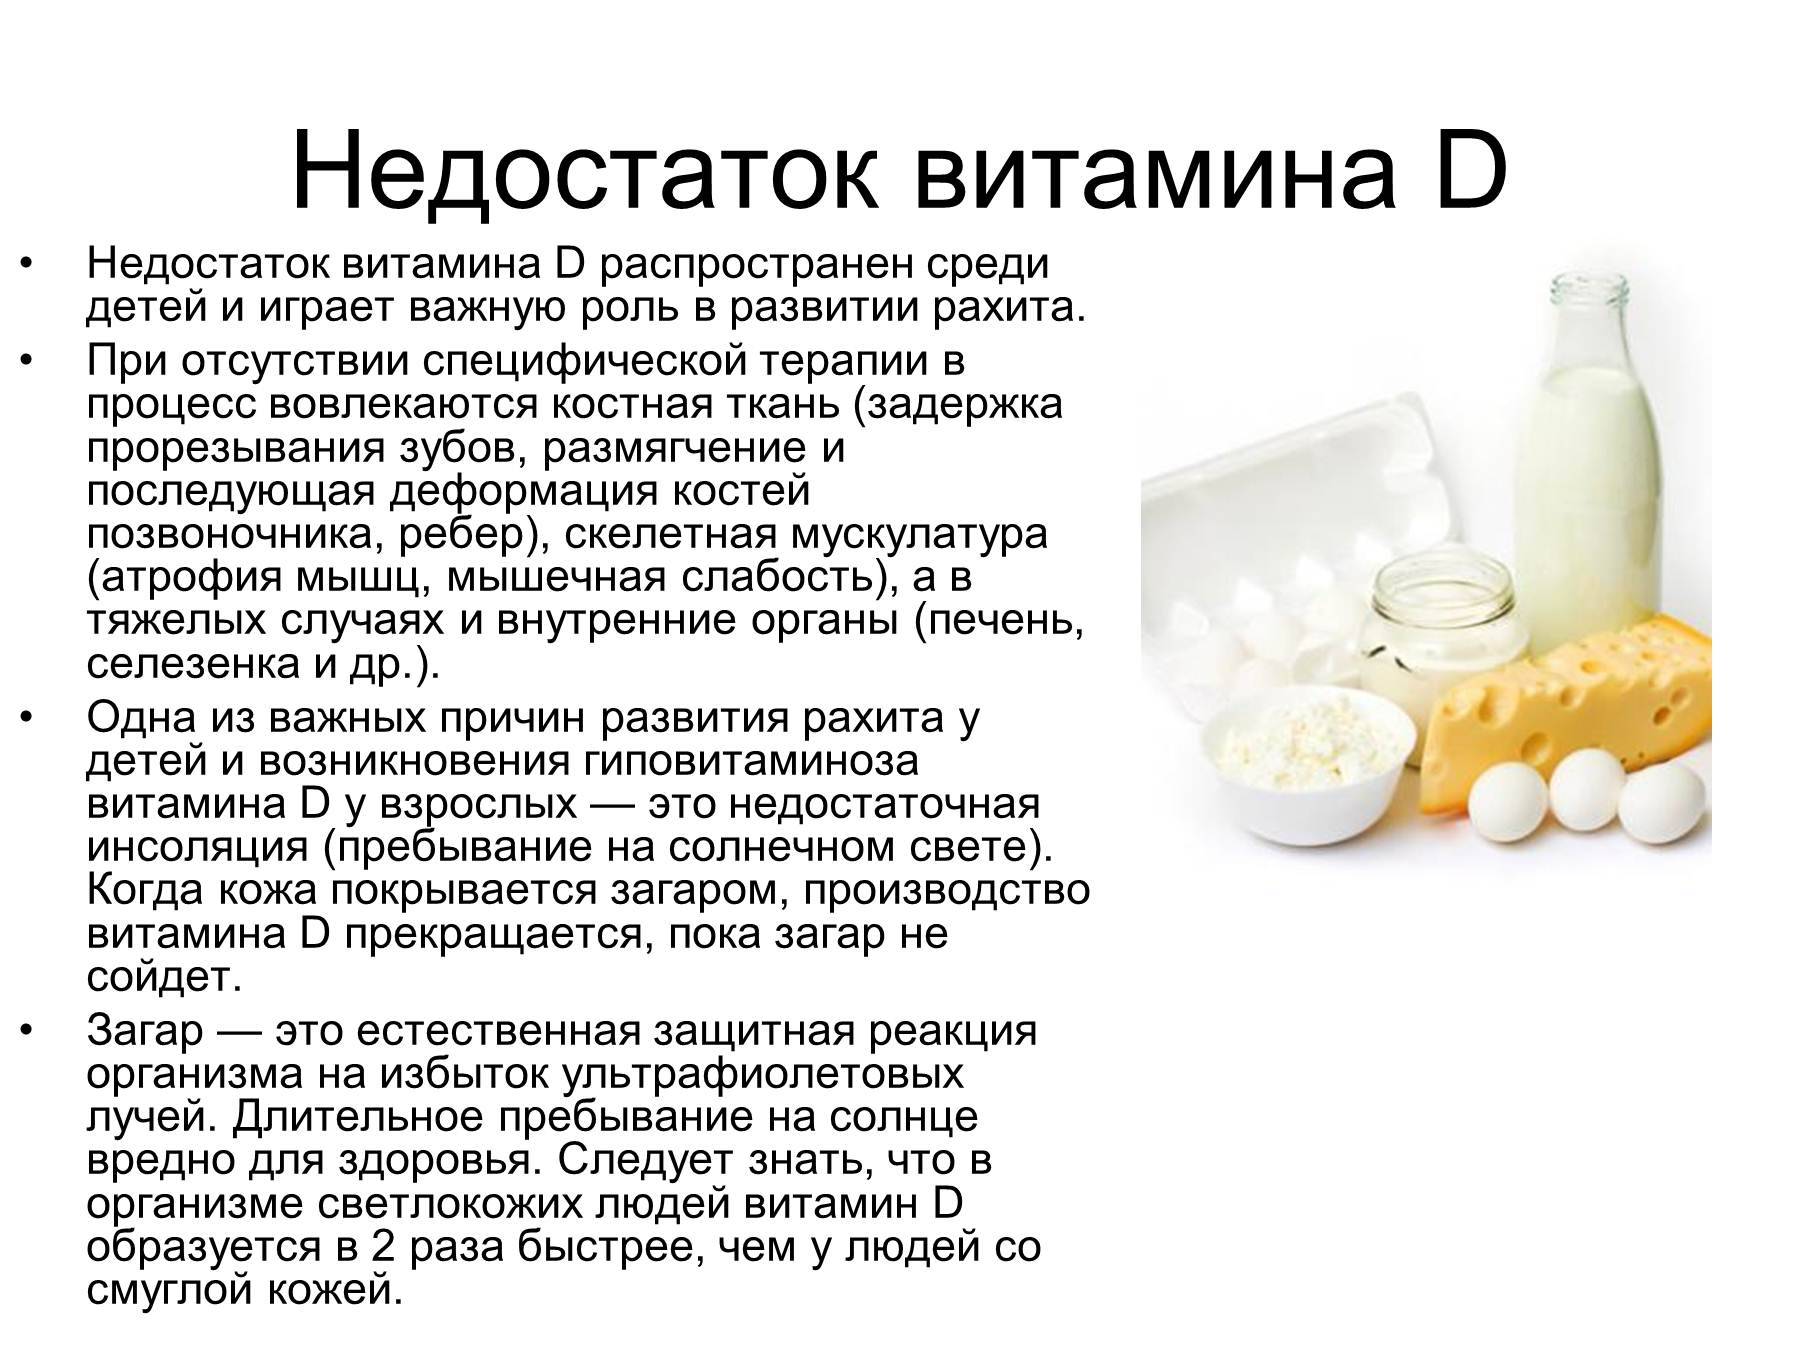 Российский ученый предупреждает: избыток витамина д опасен, как и его нехватка!